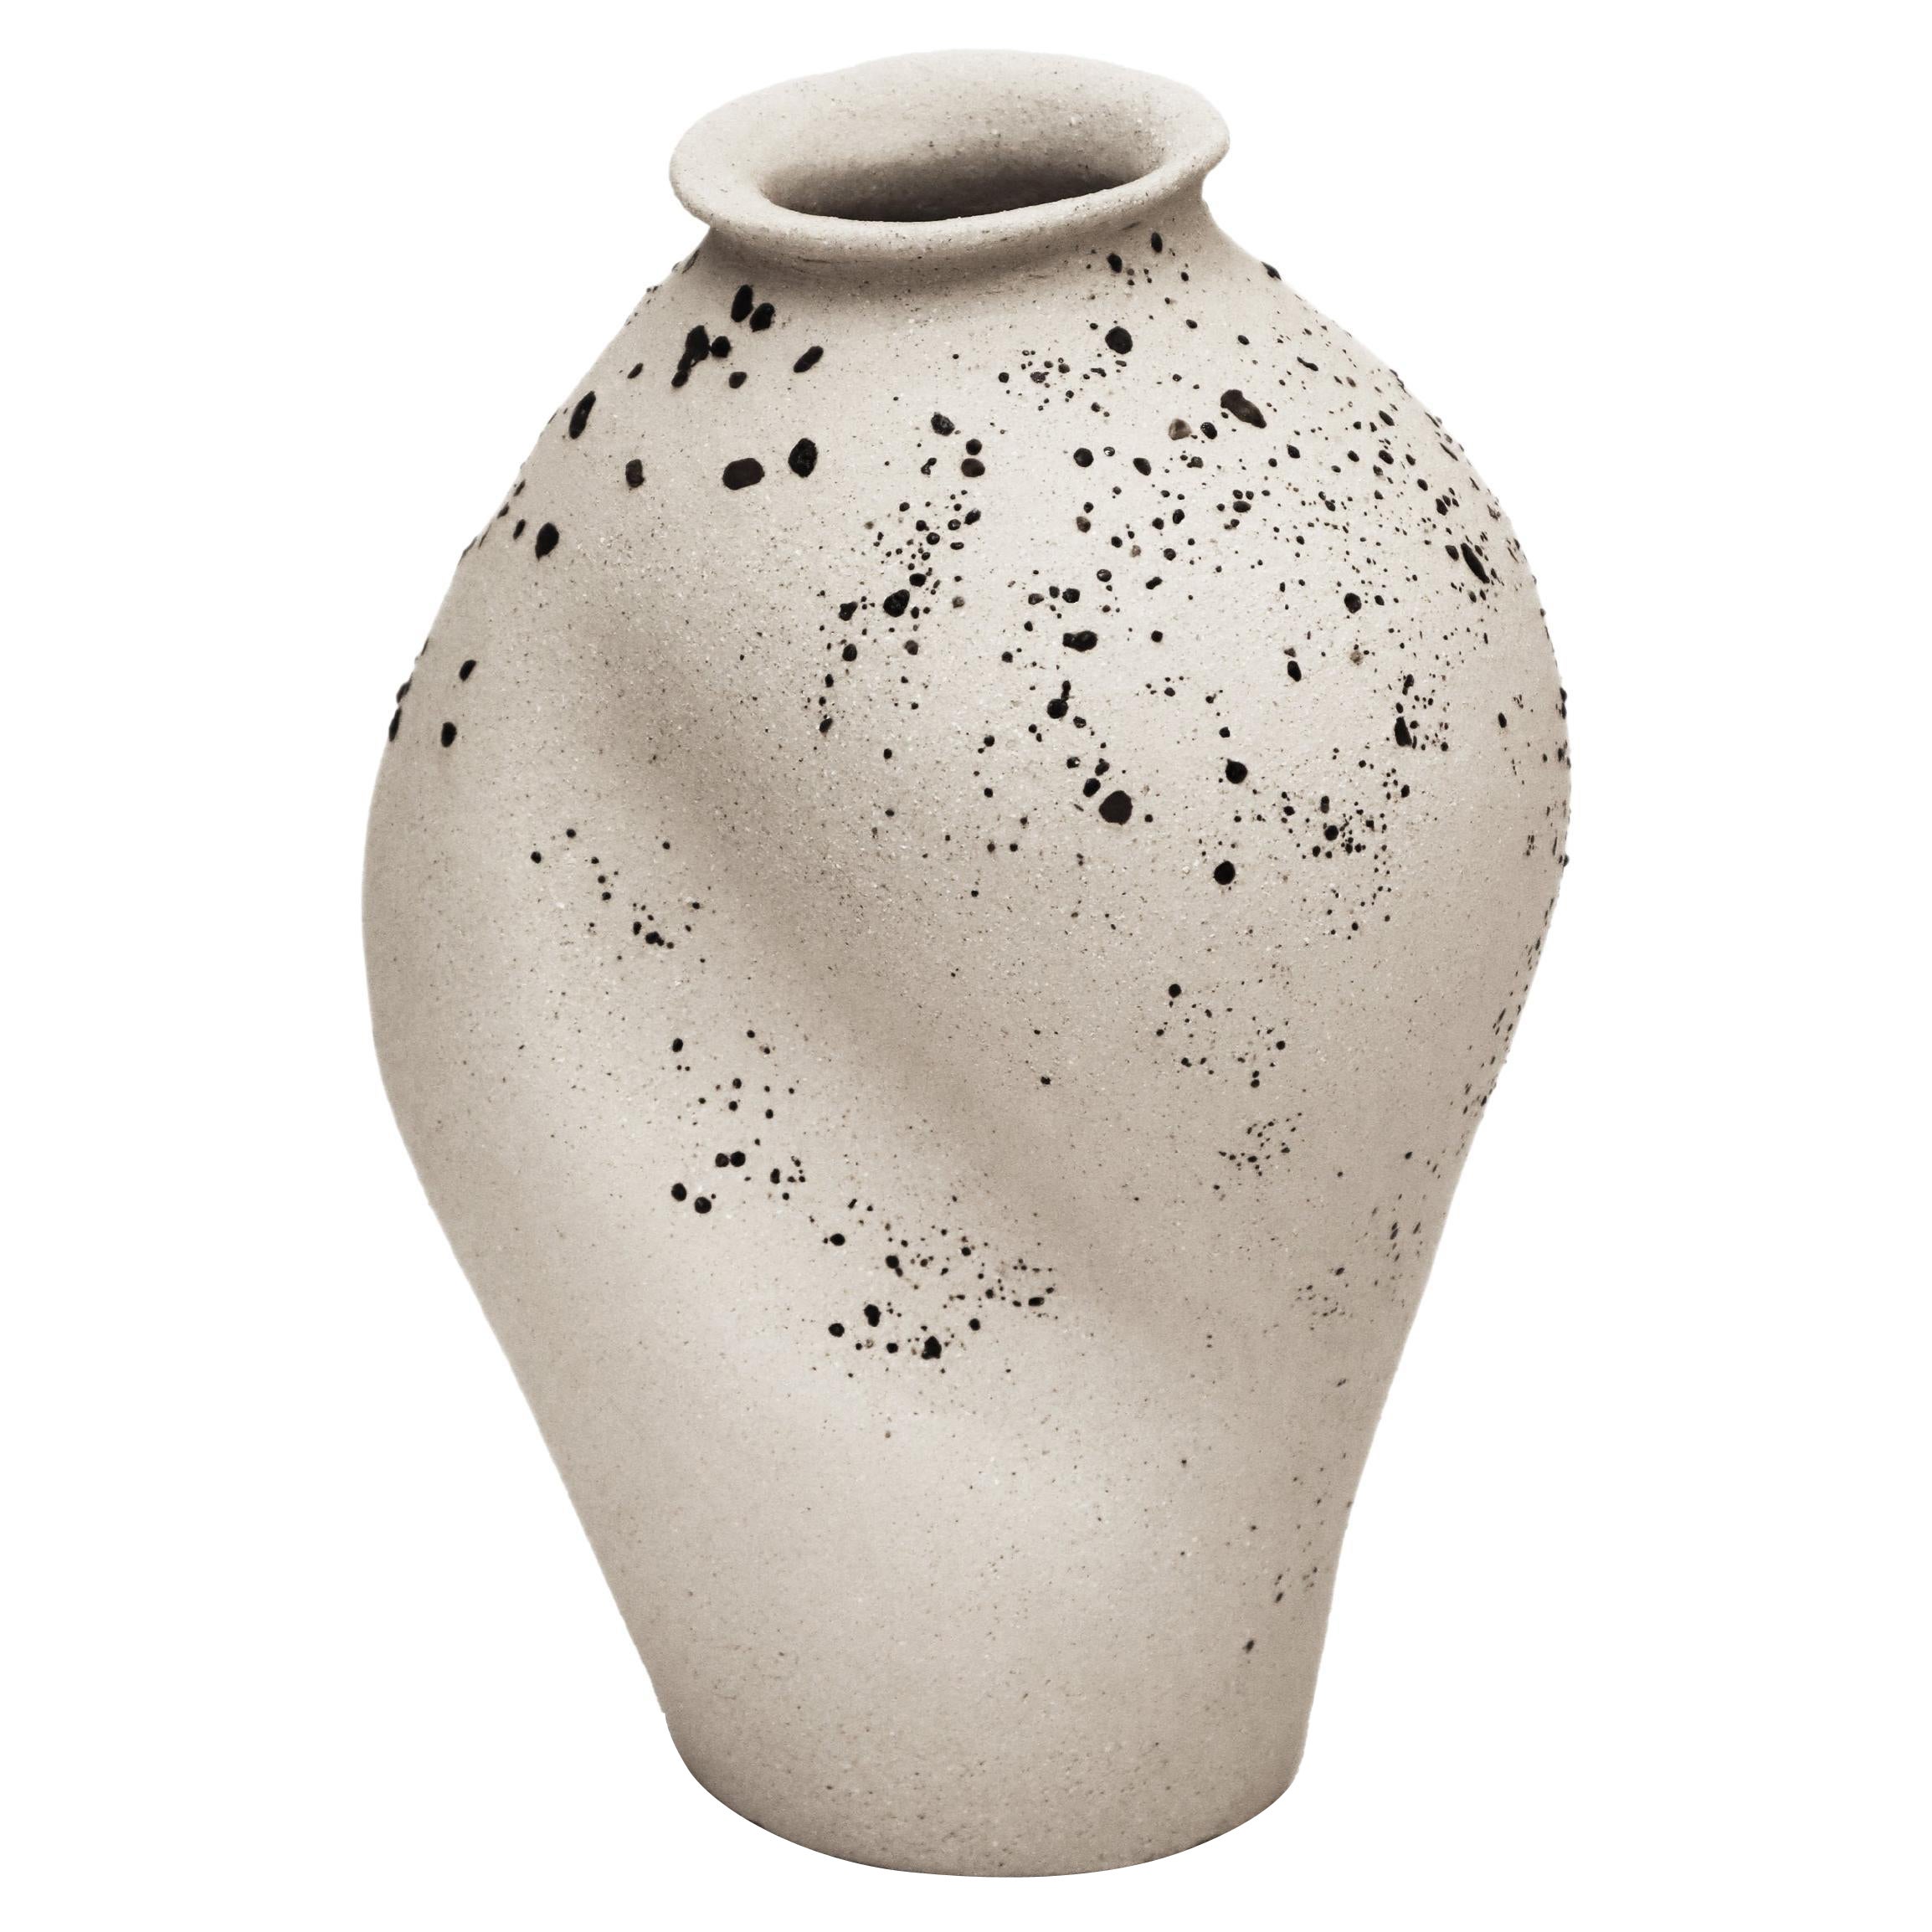 Stomata 4 Vase by Anna Karountzou